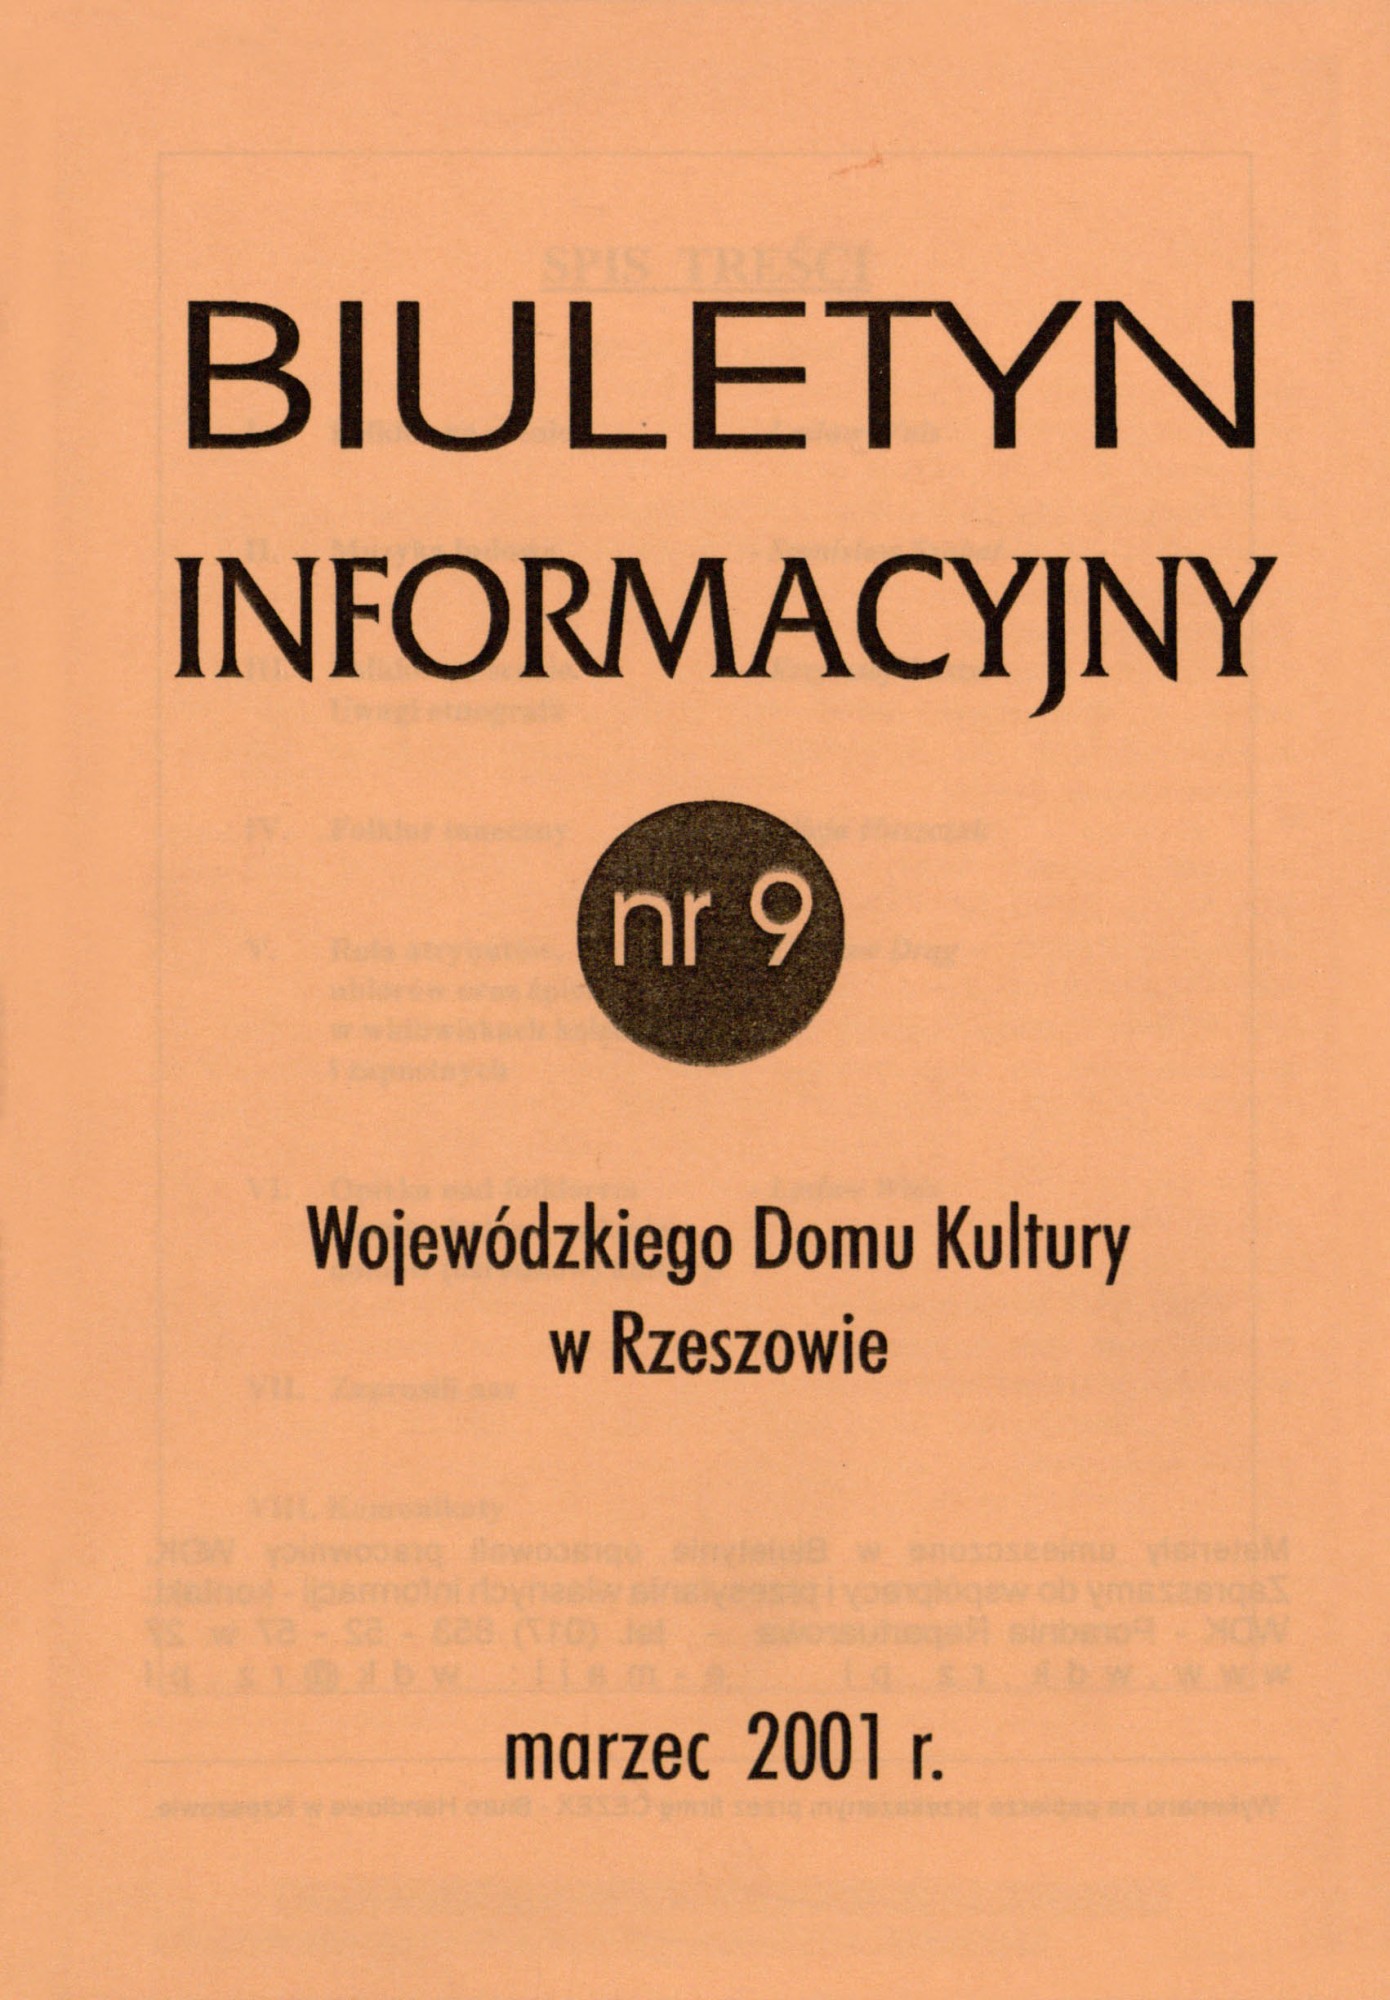 zdjęcie okładki czasopisma - Biuletyn Informacyjny Wojewódzkiego Domu Kultury w Rzeszowie. 2001, nr 9 (marzec)